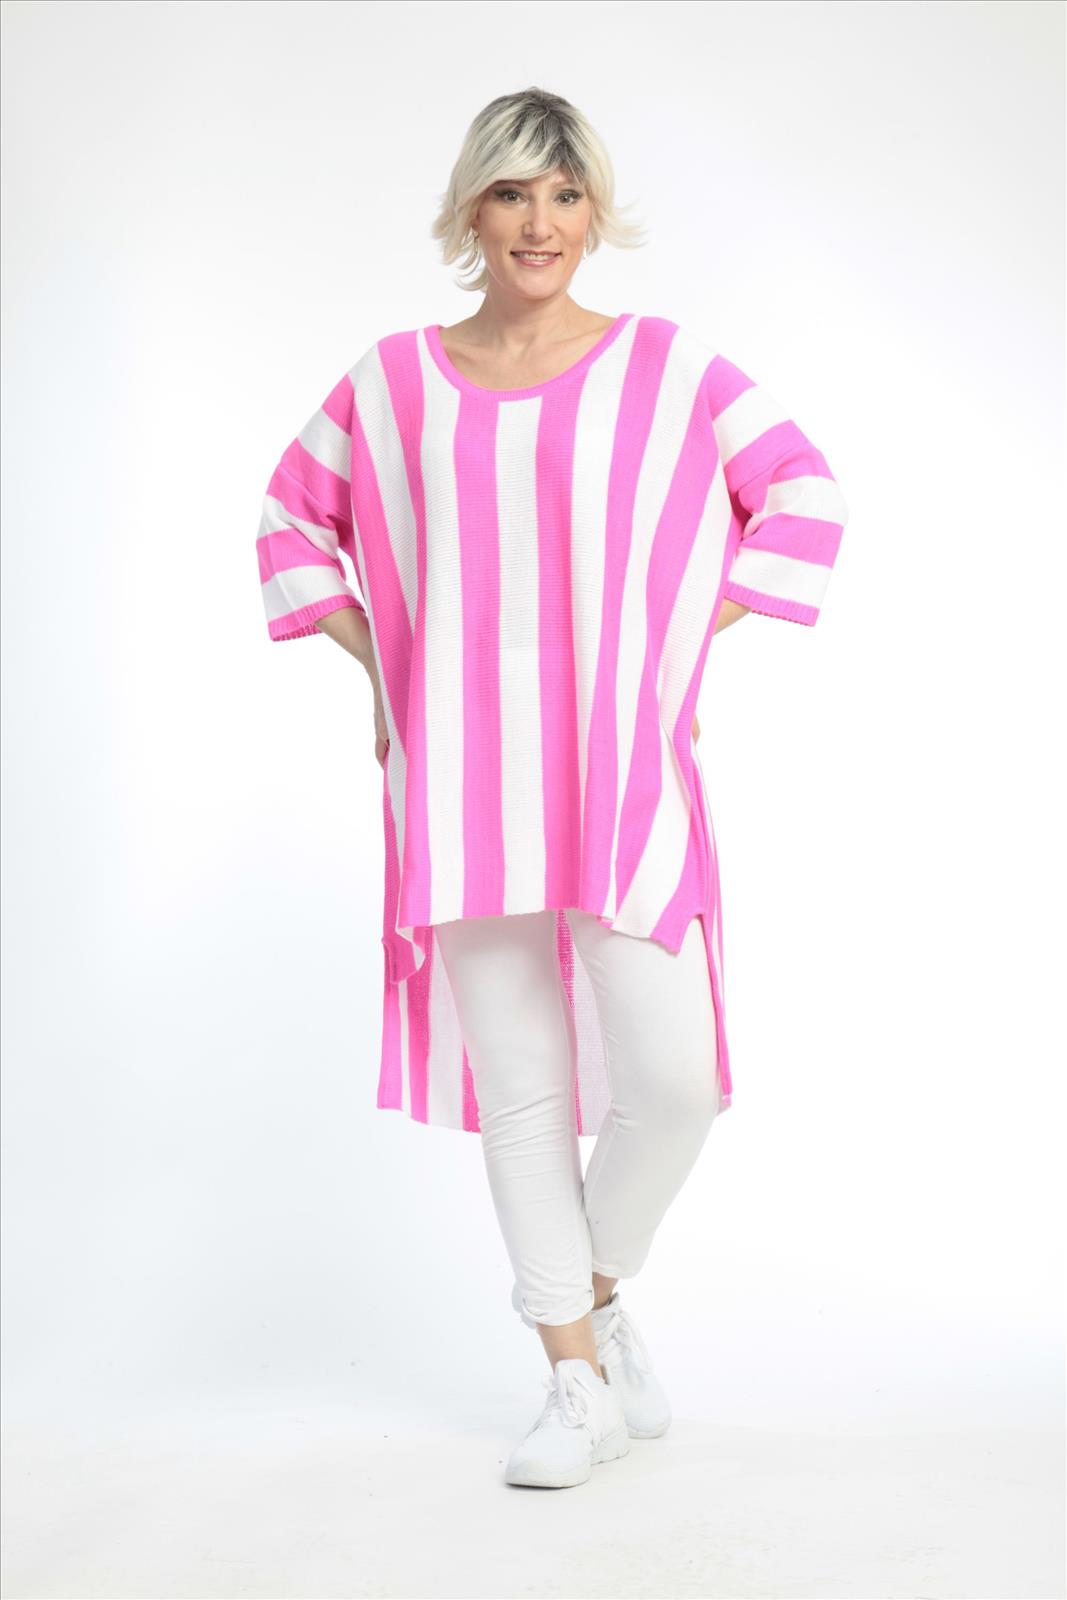 Alltags Pullover in Vokuhila Form aus feiner Strick Qualität, Pink-Weiß Lagenlook Oversize Mode B2B Großhandel